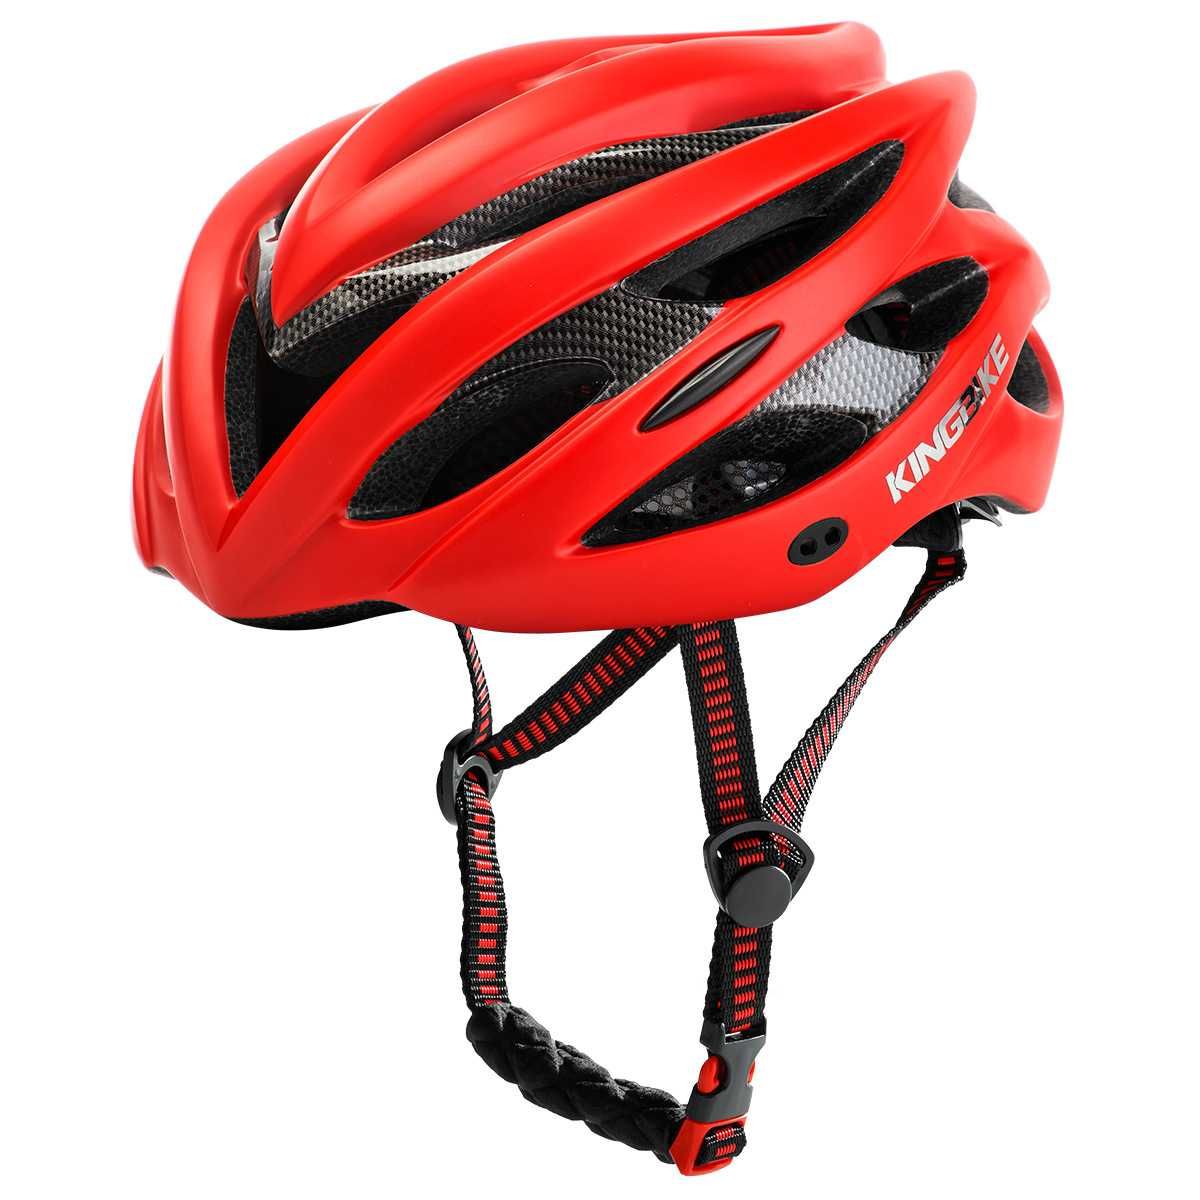 Велосипедний шолом (шлем) KingBike розмір L, XL